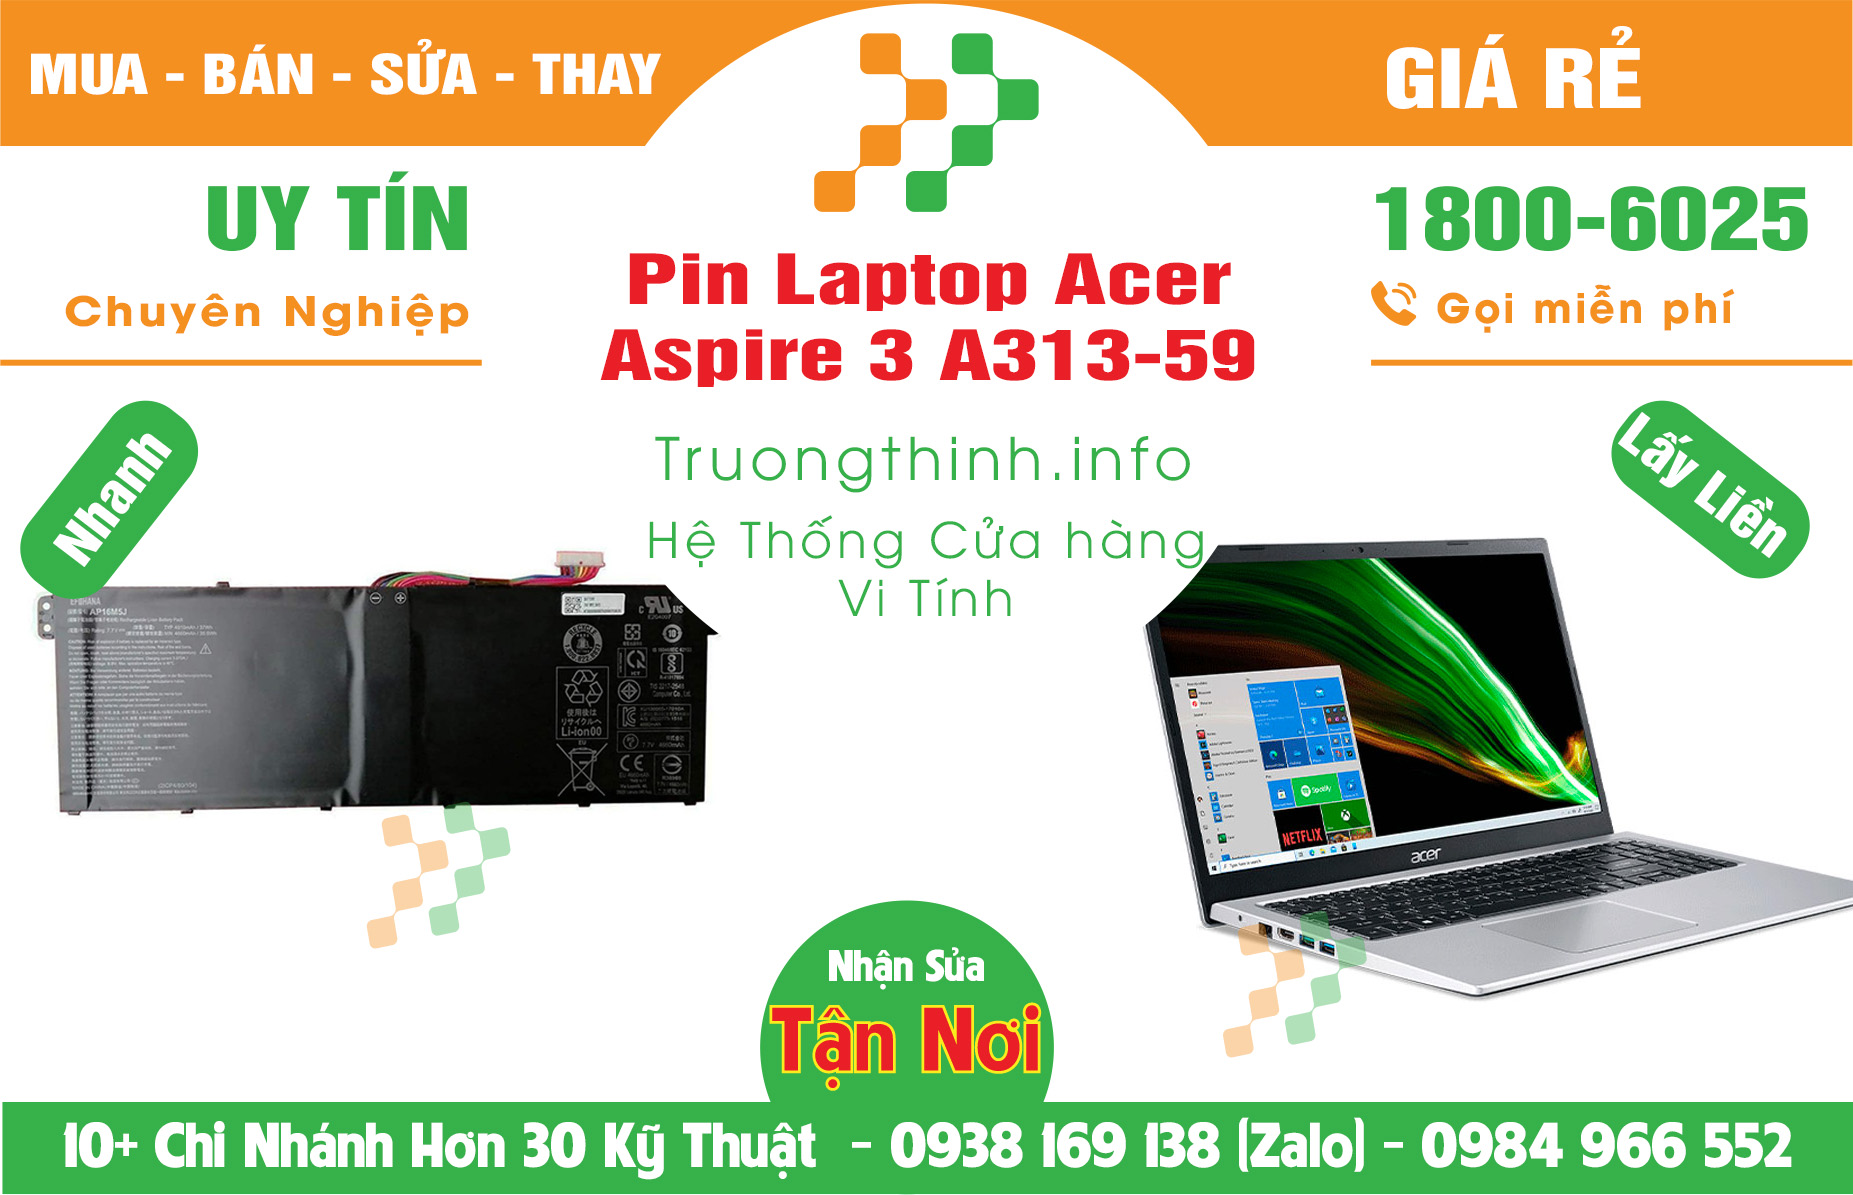 Mua Bán Pin Acer Aspire 3 A313-59 Giá Rẻ | Máy Tính Trường Thịnh Giá Rẻ